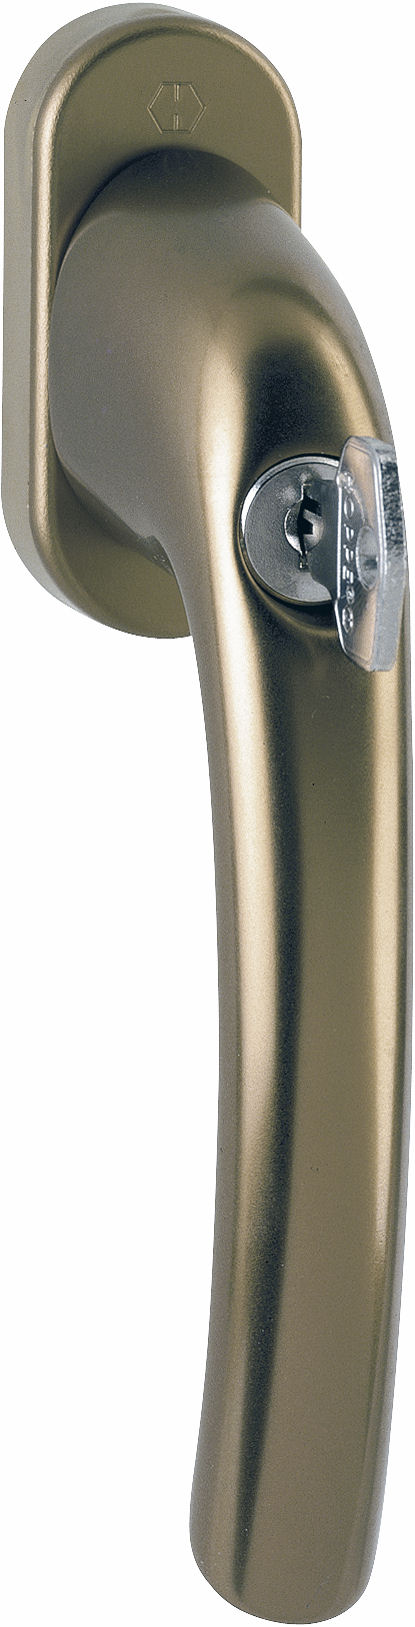 Martellina dk con chiave HOPPE modello TOKYO per serramento con rosetta con quadro 35 in alluminio bronzo